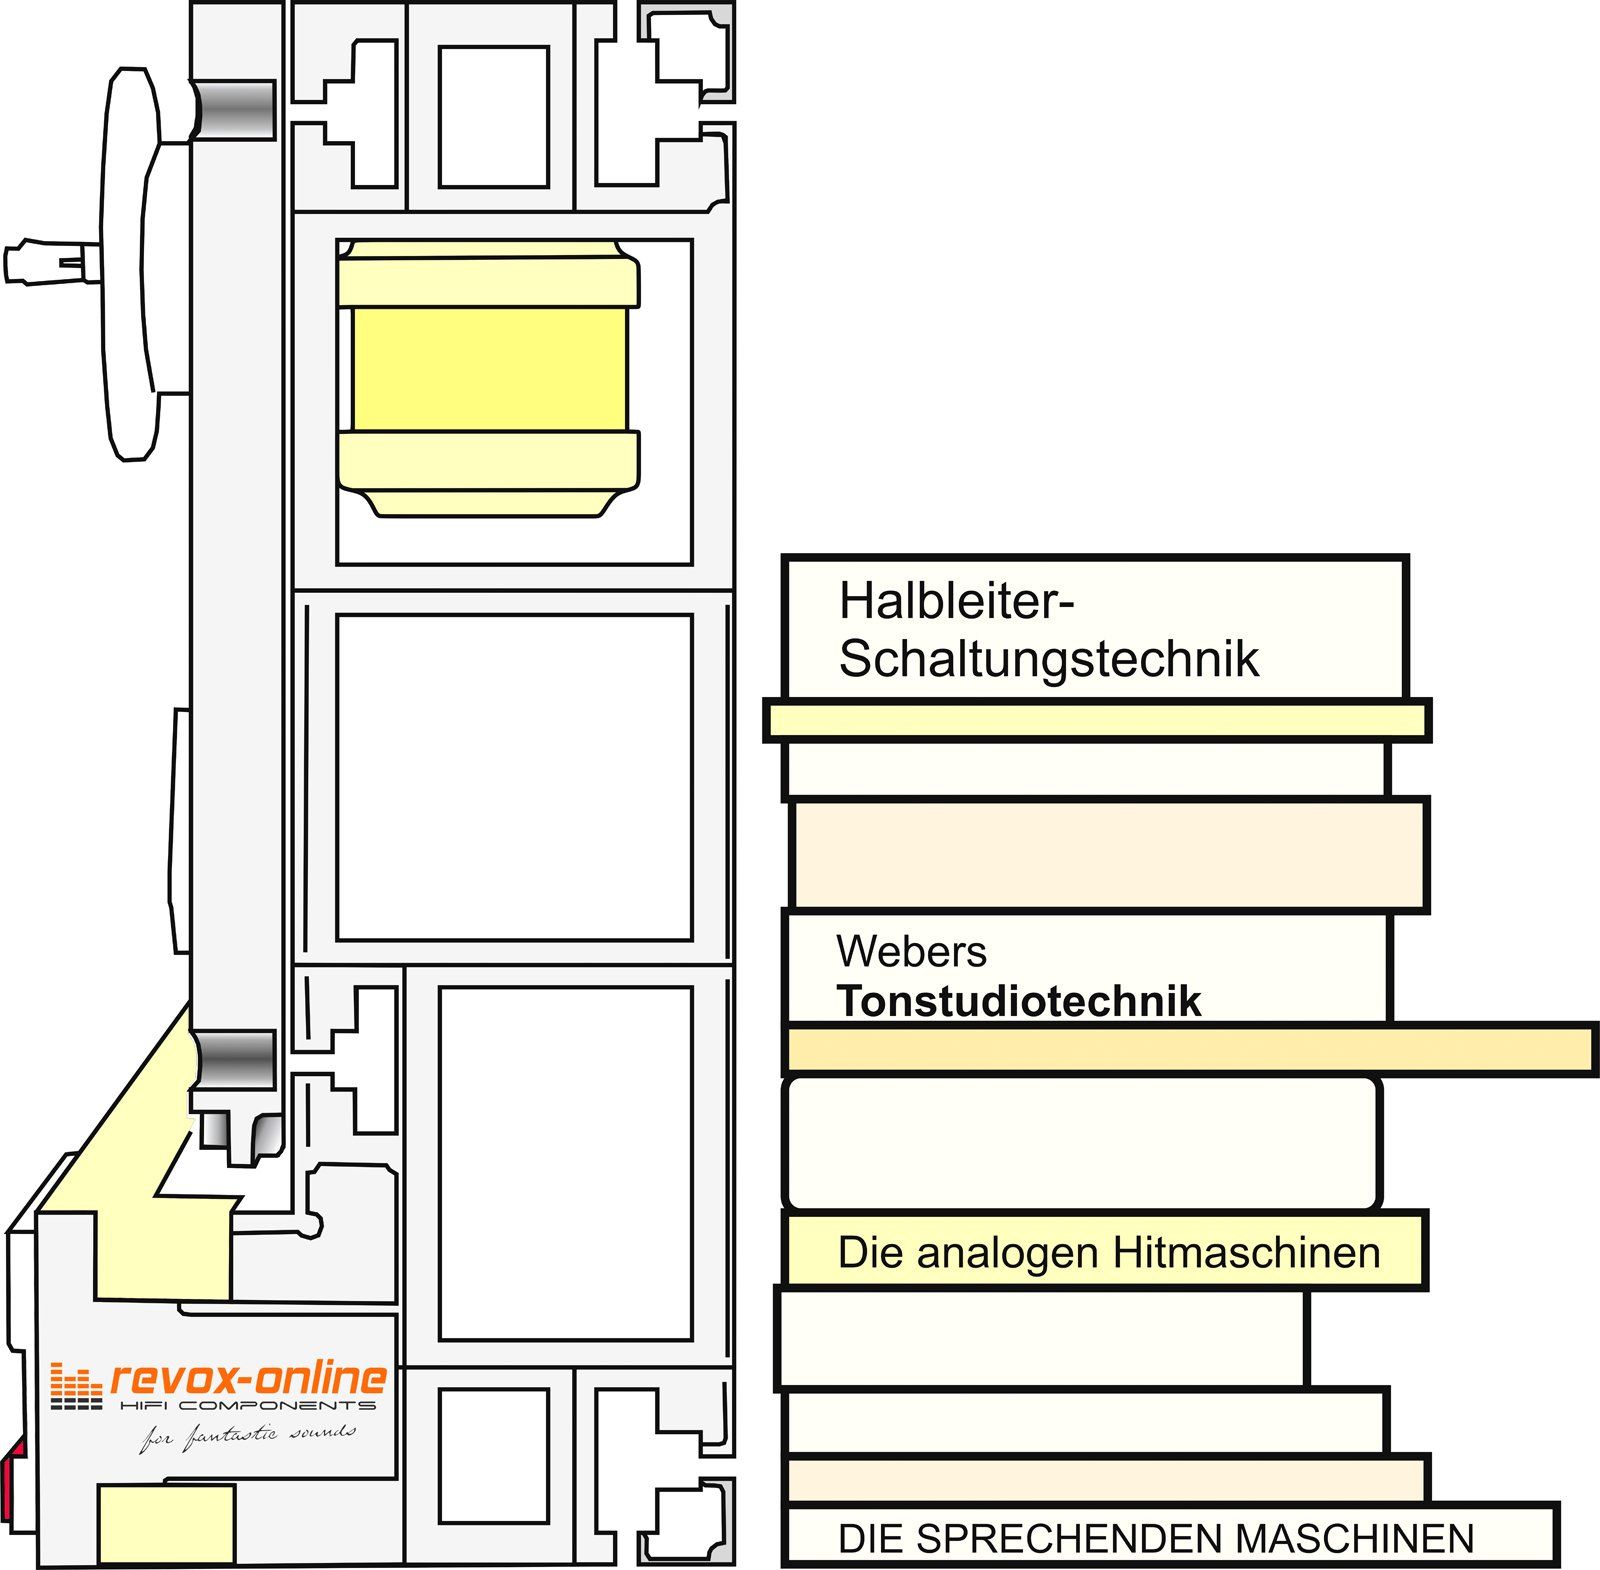 Workbench for transformer removal, revox-online